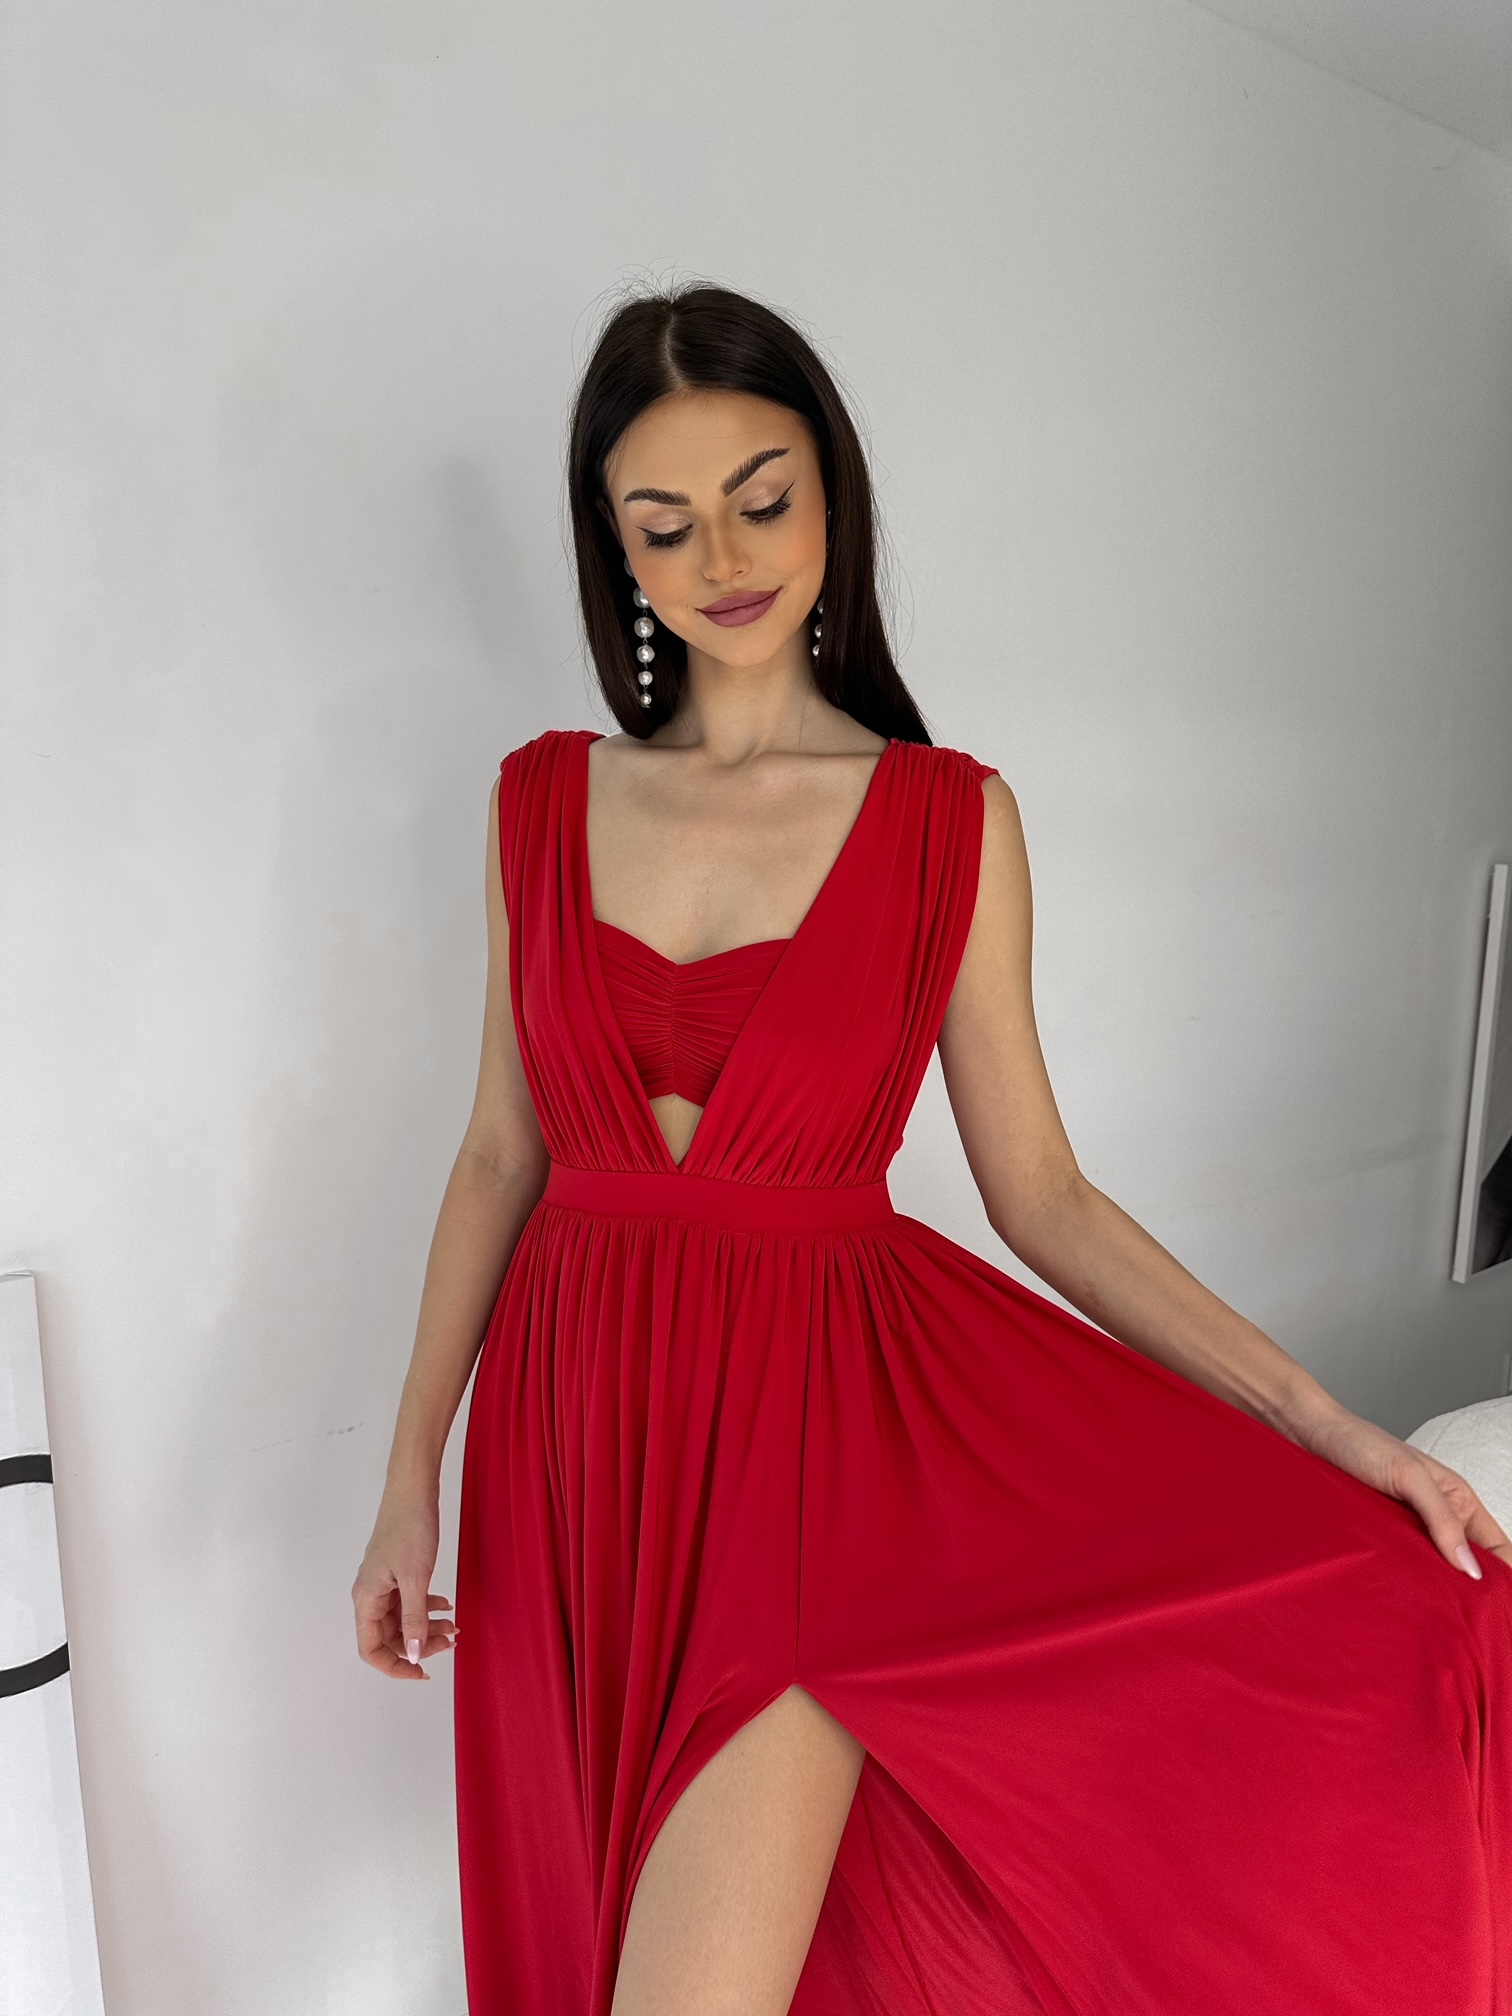 Šaty TANYA červené shine VELIKOST: UNI(XS-M)